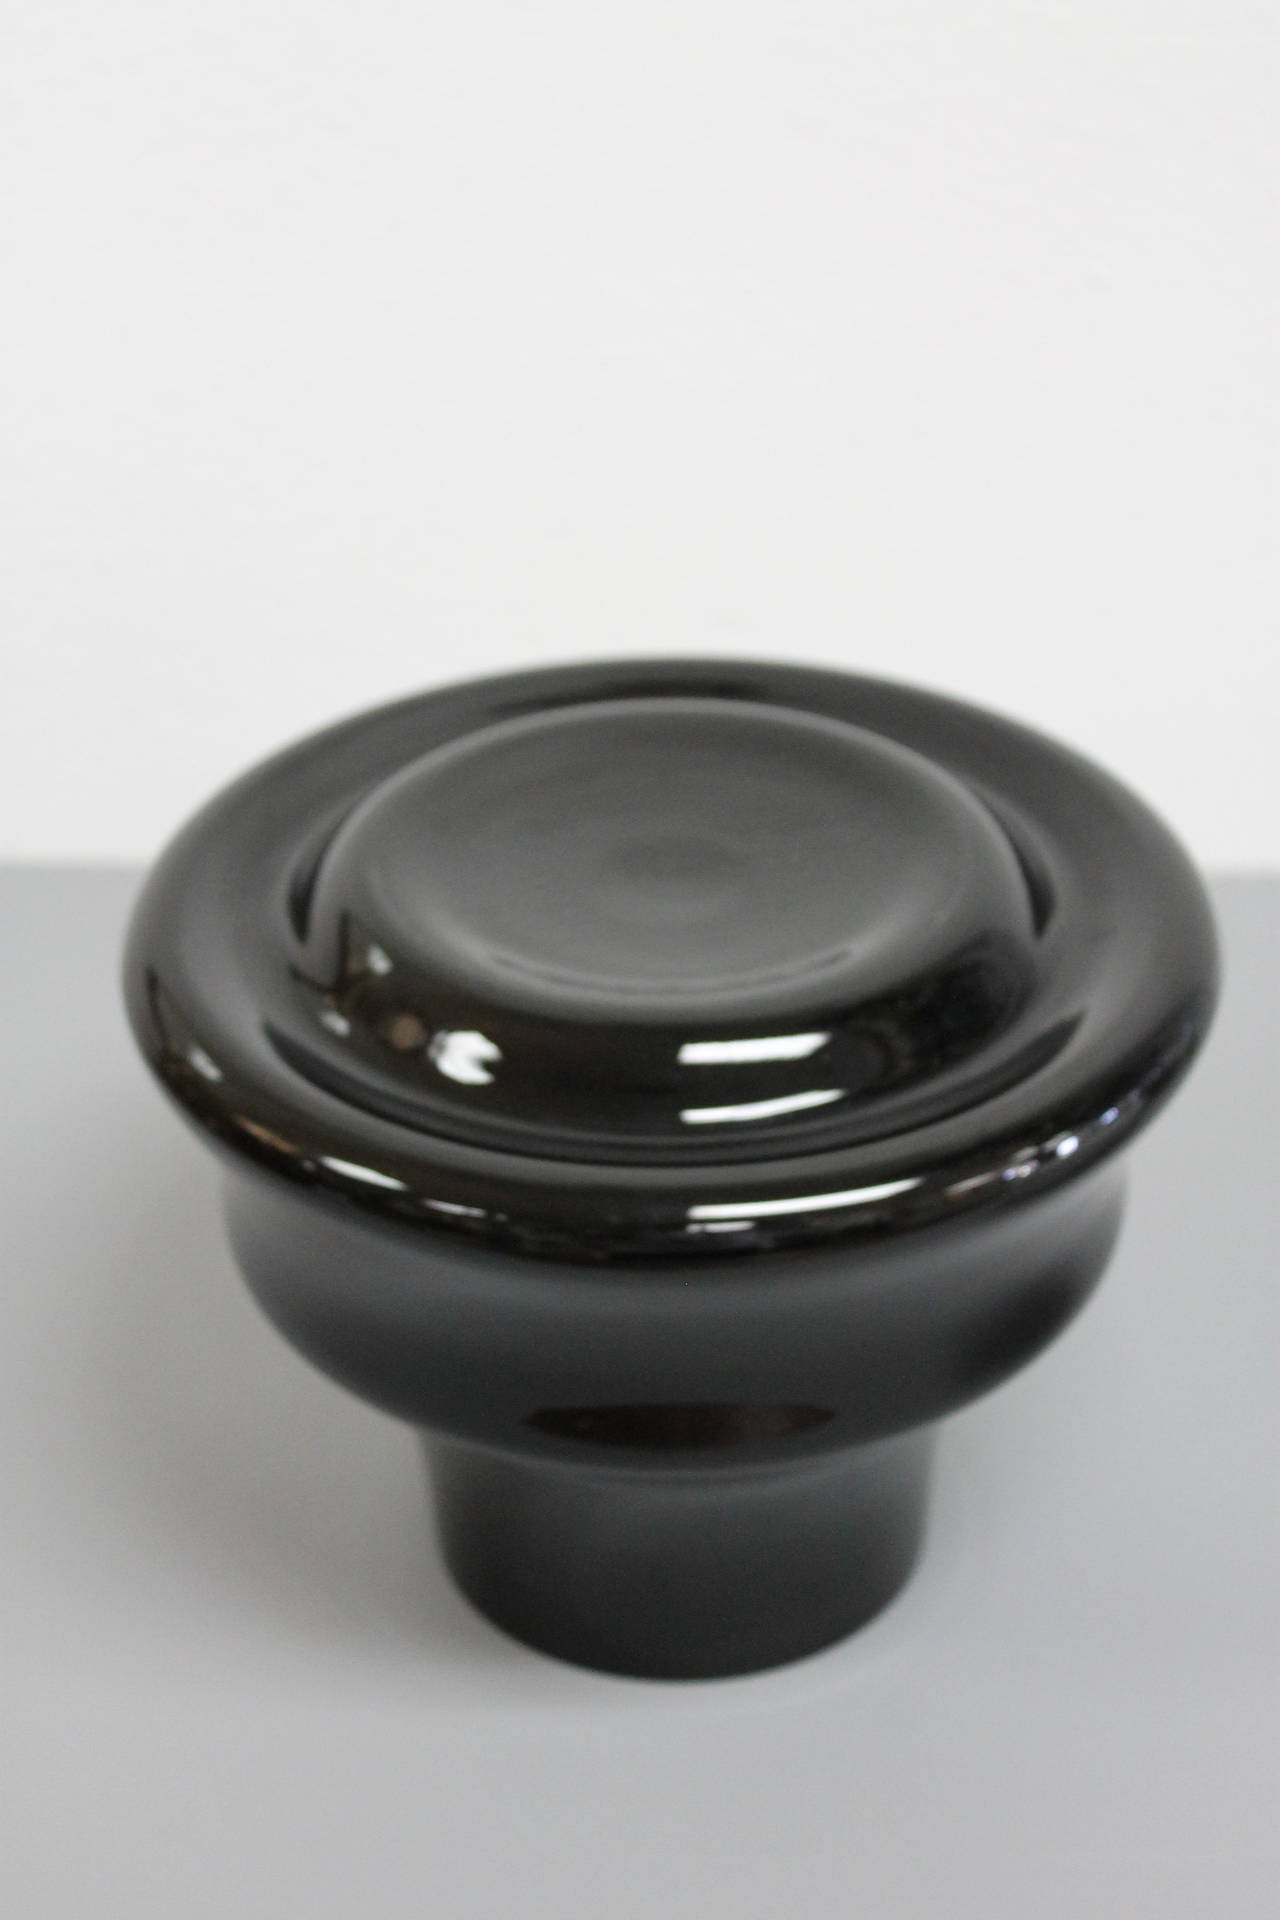 Vase aus Kunstglas in Schwarz (wir haben auch eine kleinere weiße Version), entworfen von Sergio Asti und hergestellt von Salviati.  Signiert Salviati auf der Unterseite.  Der Boden hat einen Durchmesser von 9